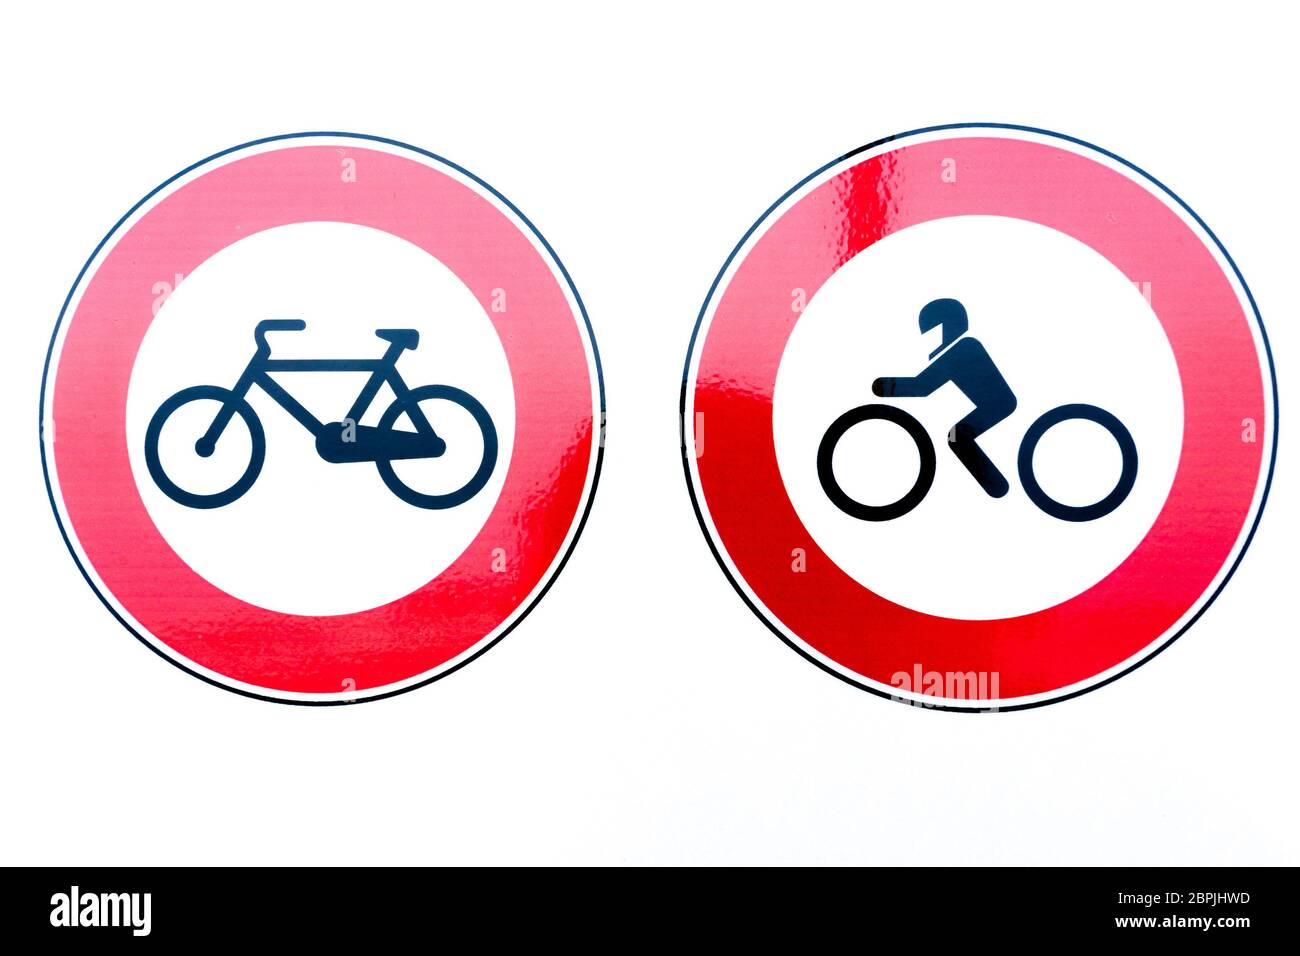 Fahrrad und Motorrad Verbotsschilder. Roter Kreis mit Logo innen  Stockfotografie - Alamy